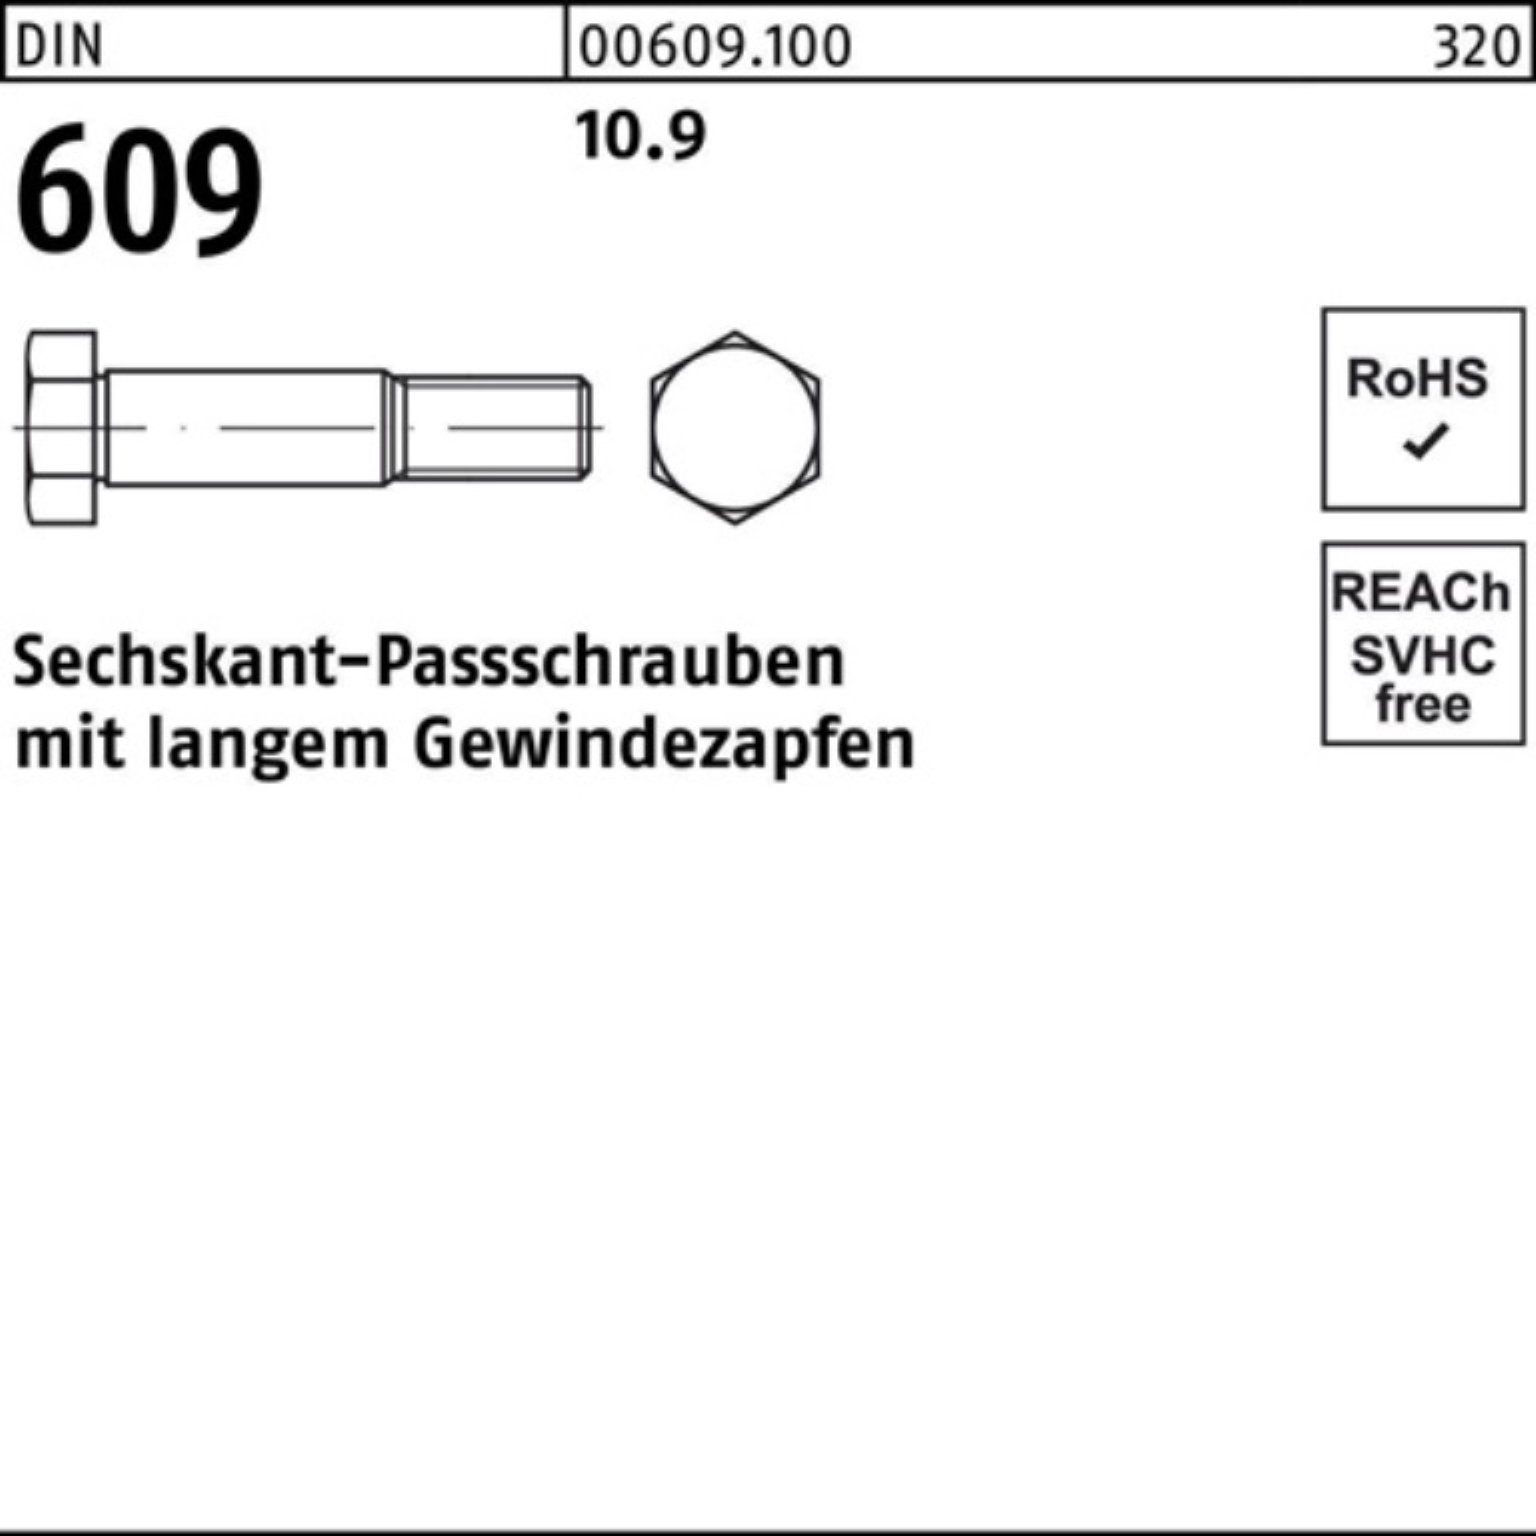 Pack 100er 609 Reyher 45 Sechskantpassschraube langem Gewindezapfen DIN Schraube M20x